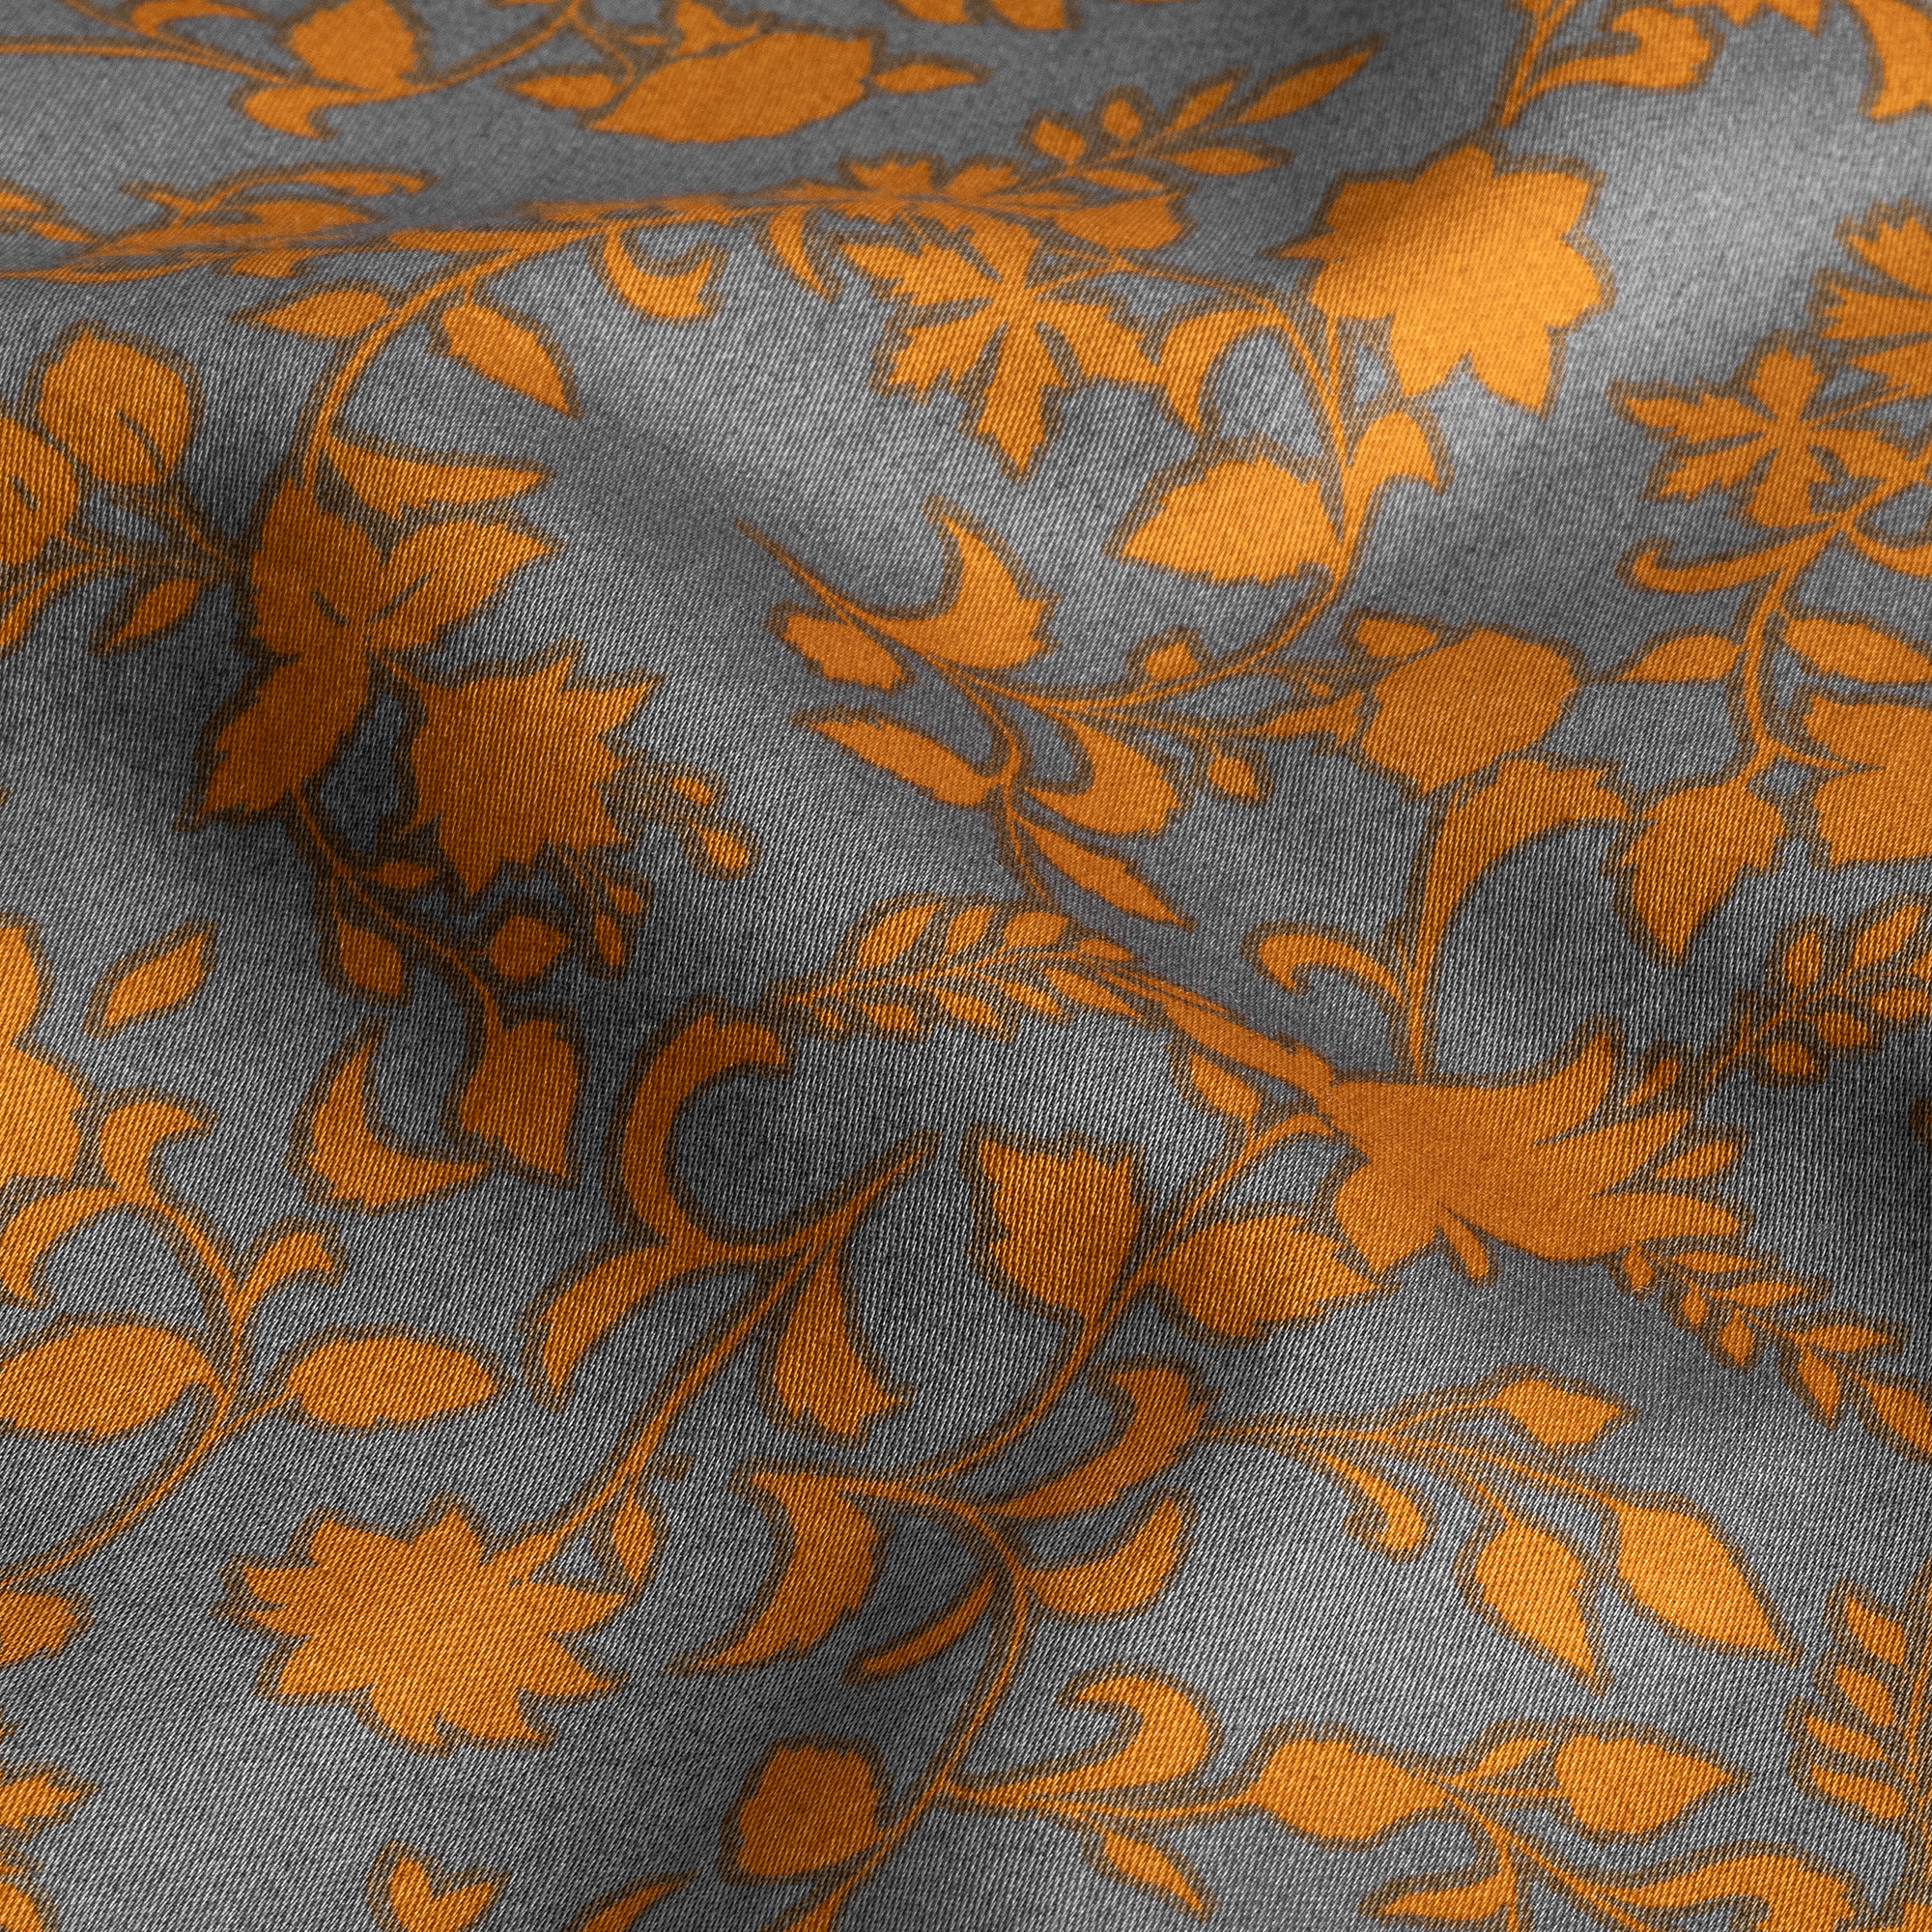 Комплект постельного белья Togas Корли Полуторный Серый/Оранжевый, размер Полуторный - фото 11